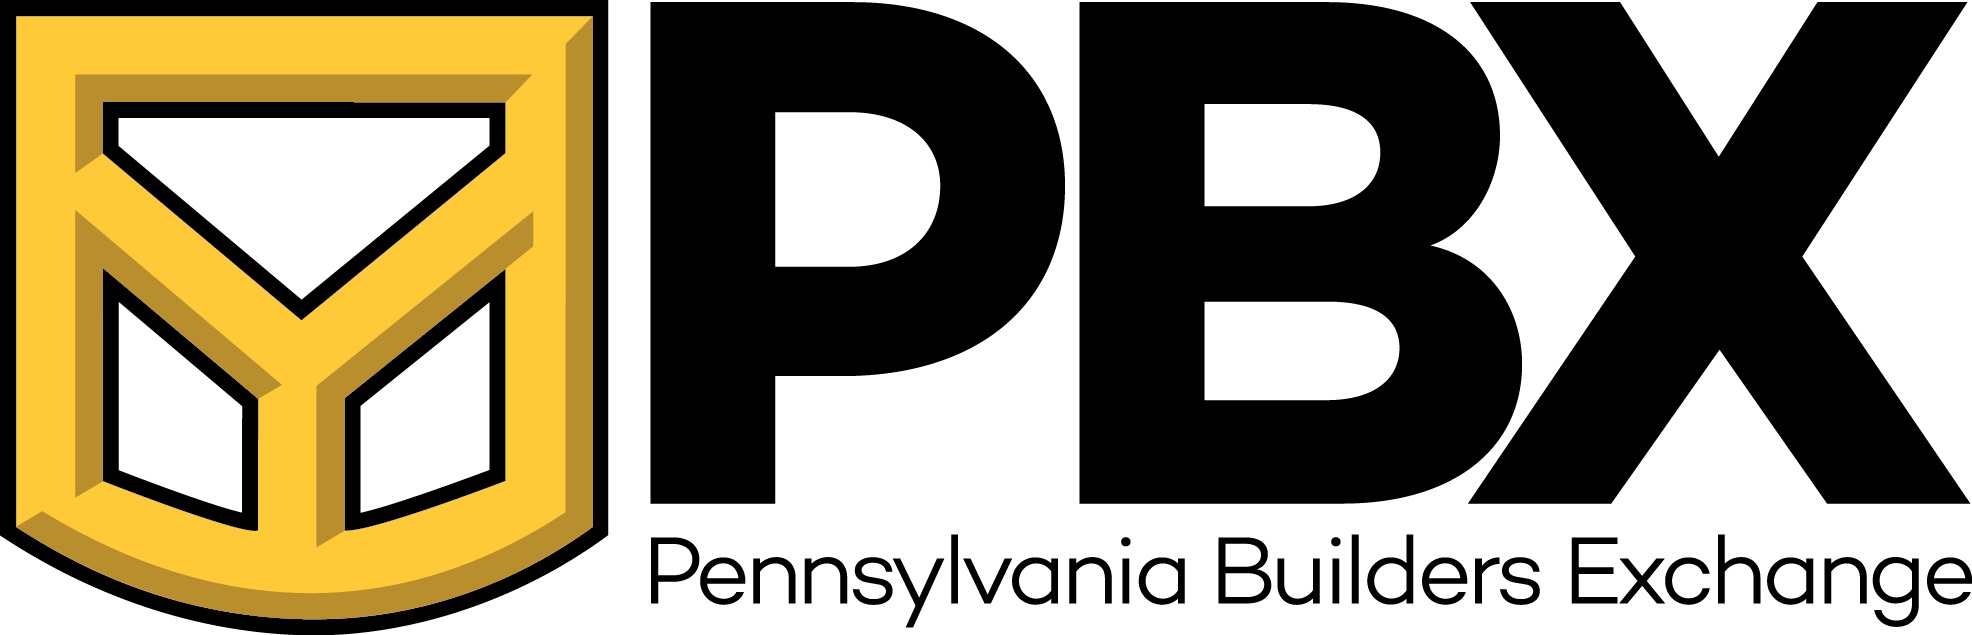 Pennsylvania Builders Exchange (PBX) Logo